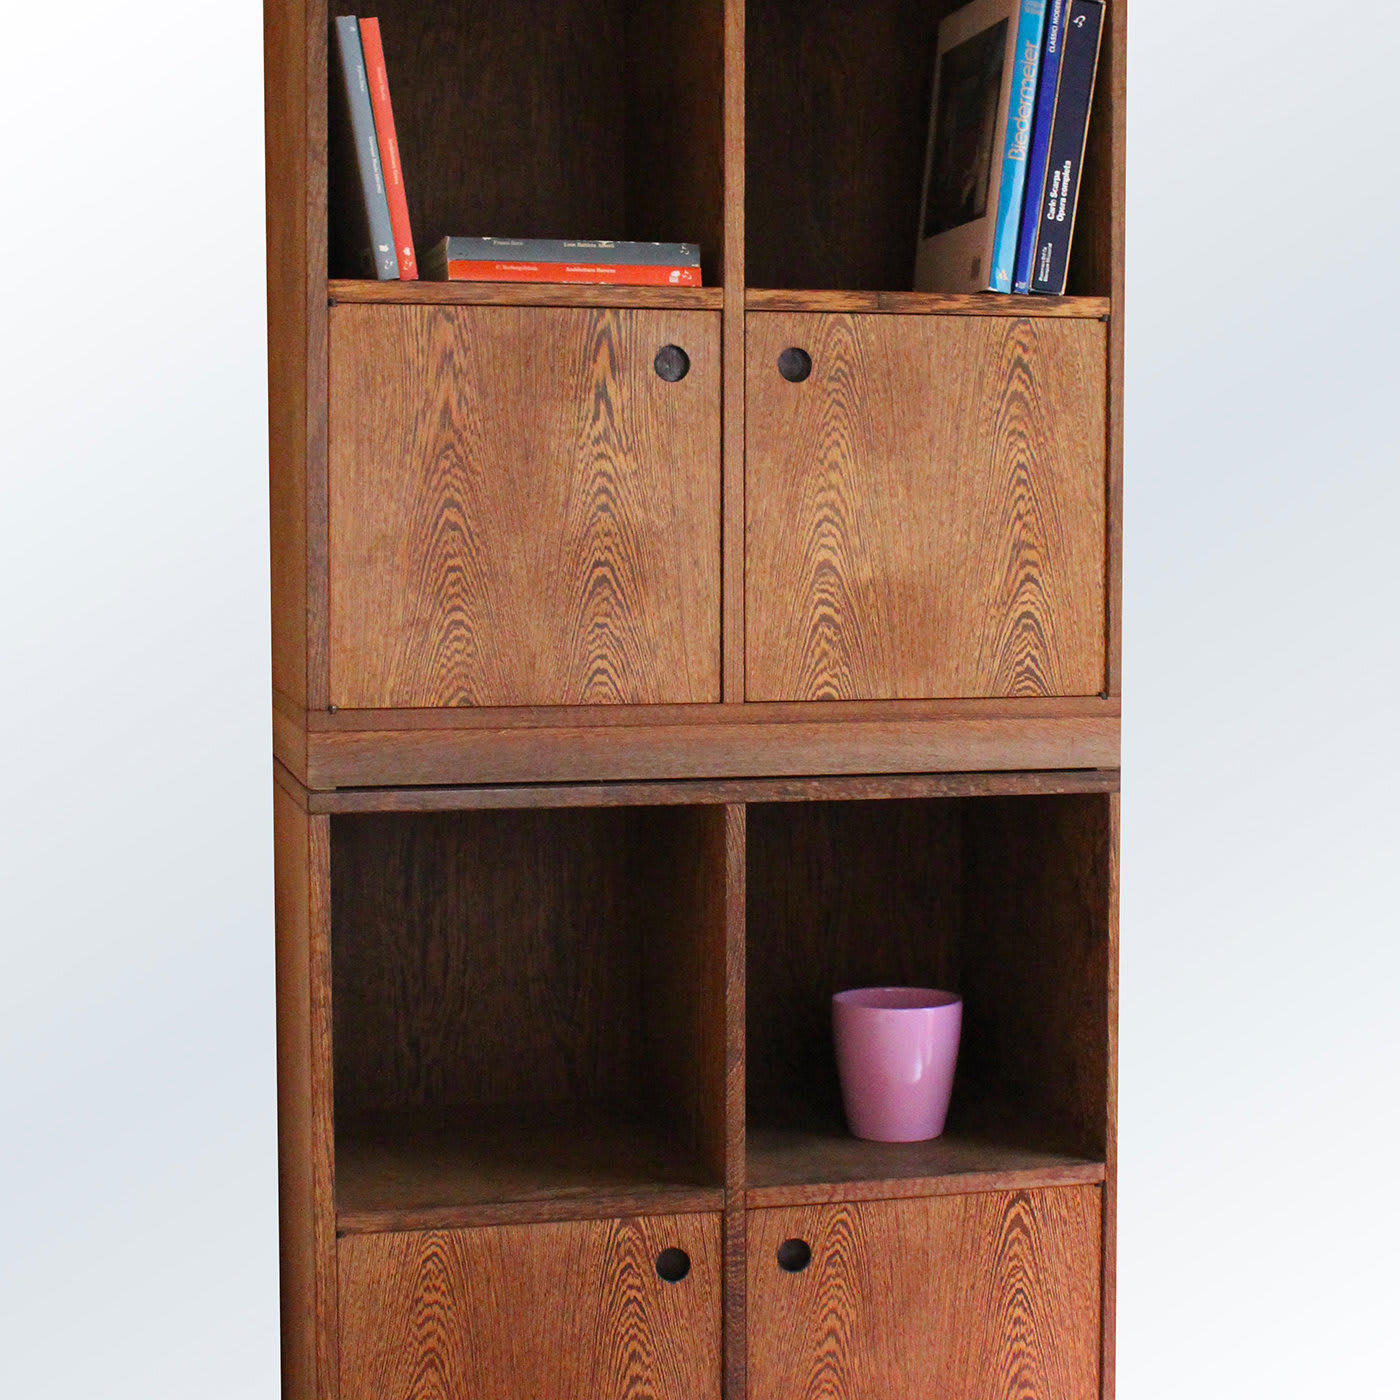 Esotica Small cabinet by Ferdinando Meccani - Meccani Design